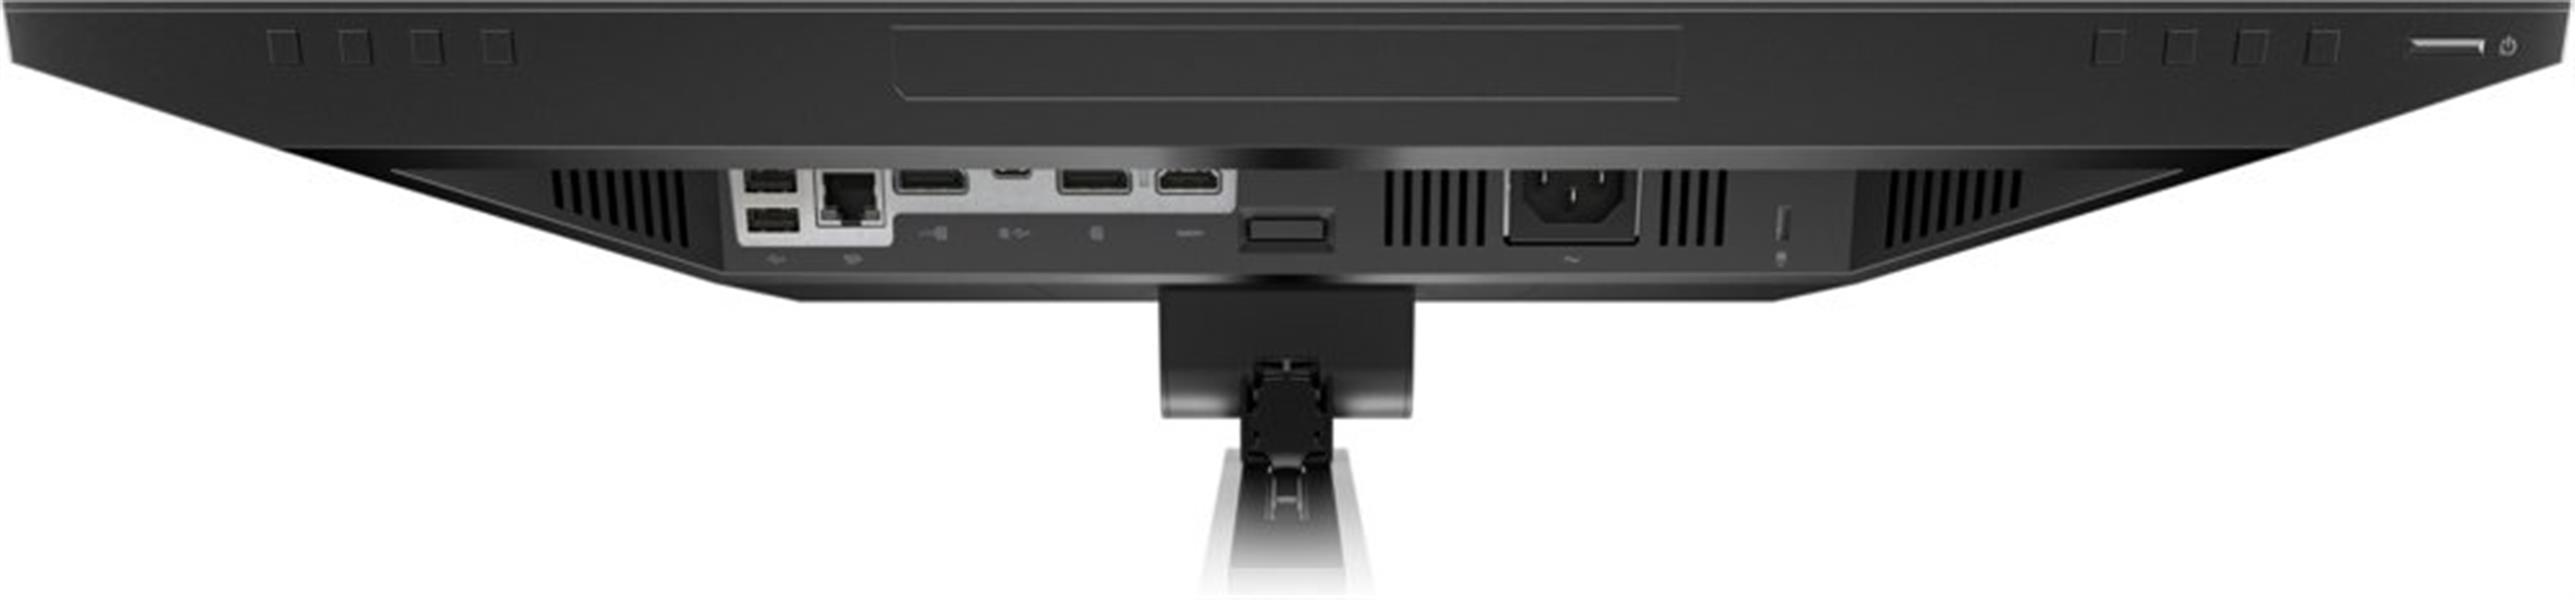 HP E24m G4 USB-C Conf 23 8i FHD Monitor